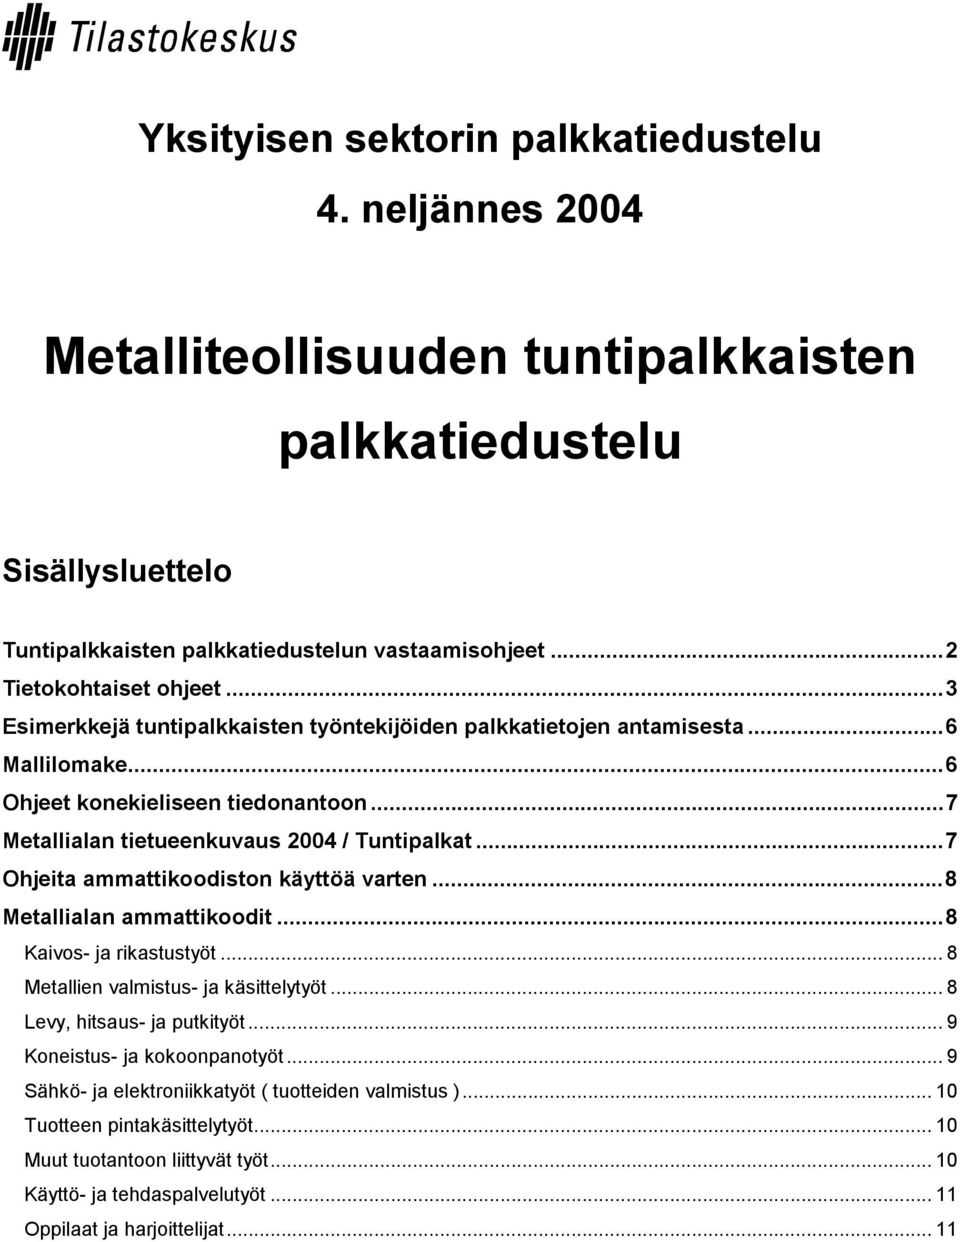 ..7 Metallialan tietueenkuvaus 2004 / Tuntipalkat...7 Ohjeita ammattikoodiston käyttöä varten...8 Metallialan ammattikoodit...8 Kaivos- ja rikastustyöt... 8 Metallien valmistus- ja käsittelytyöt.